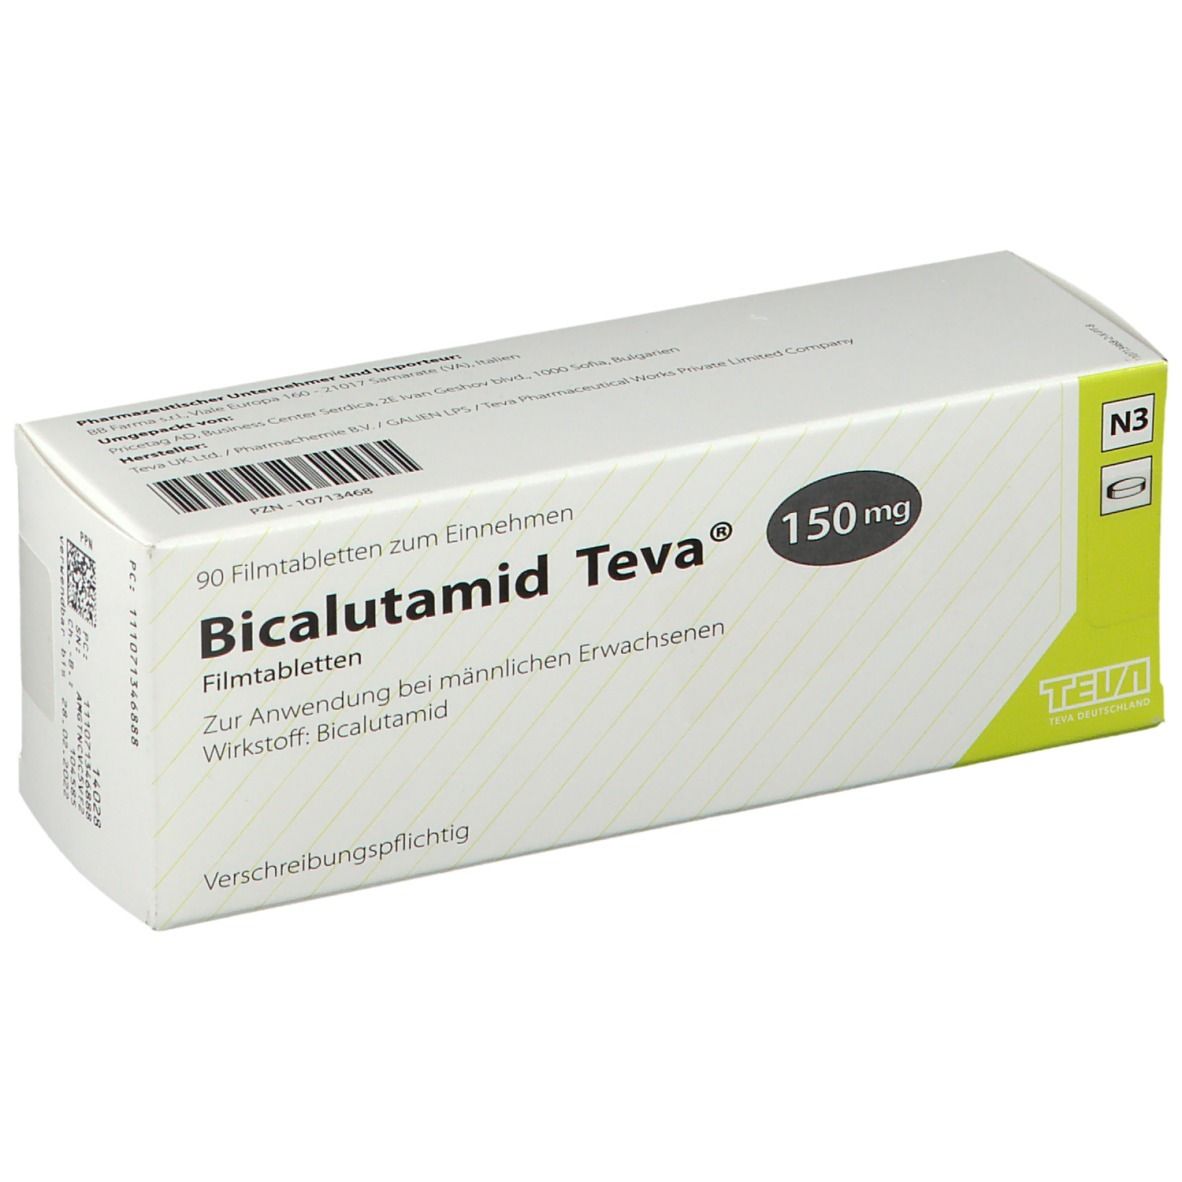 Bicalutamid Teva 150 mg